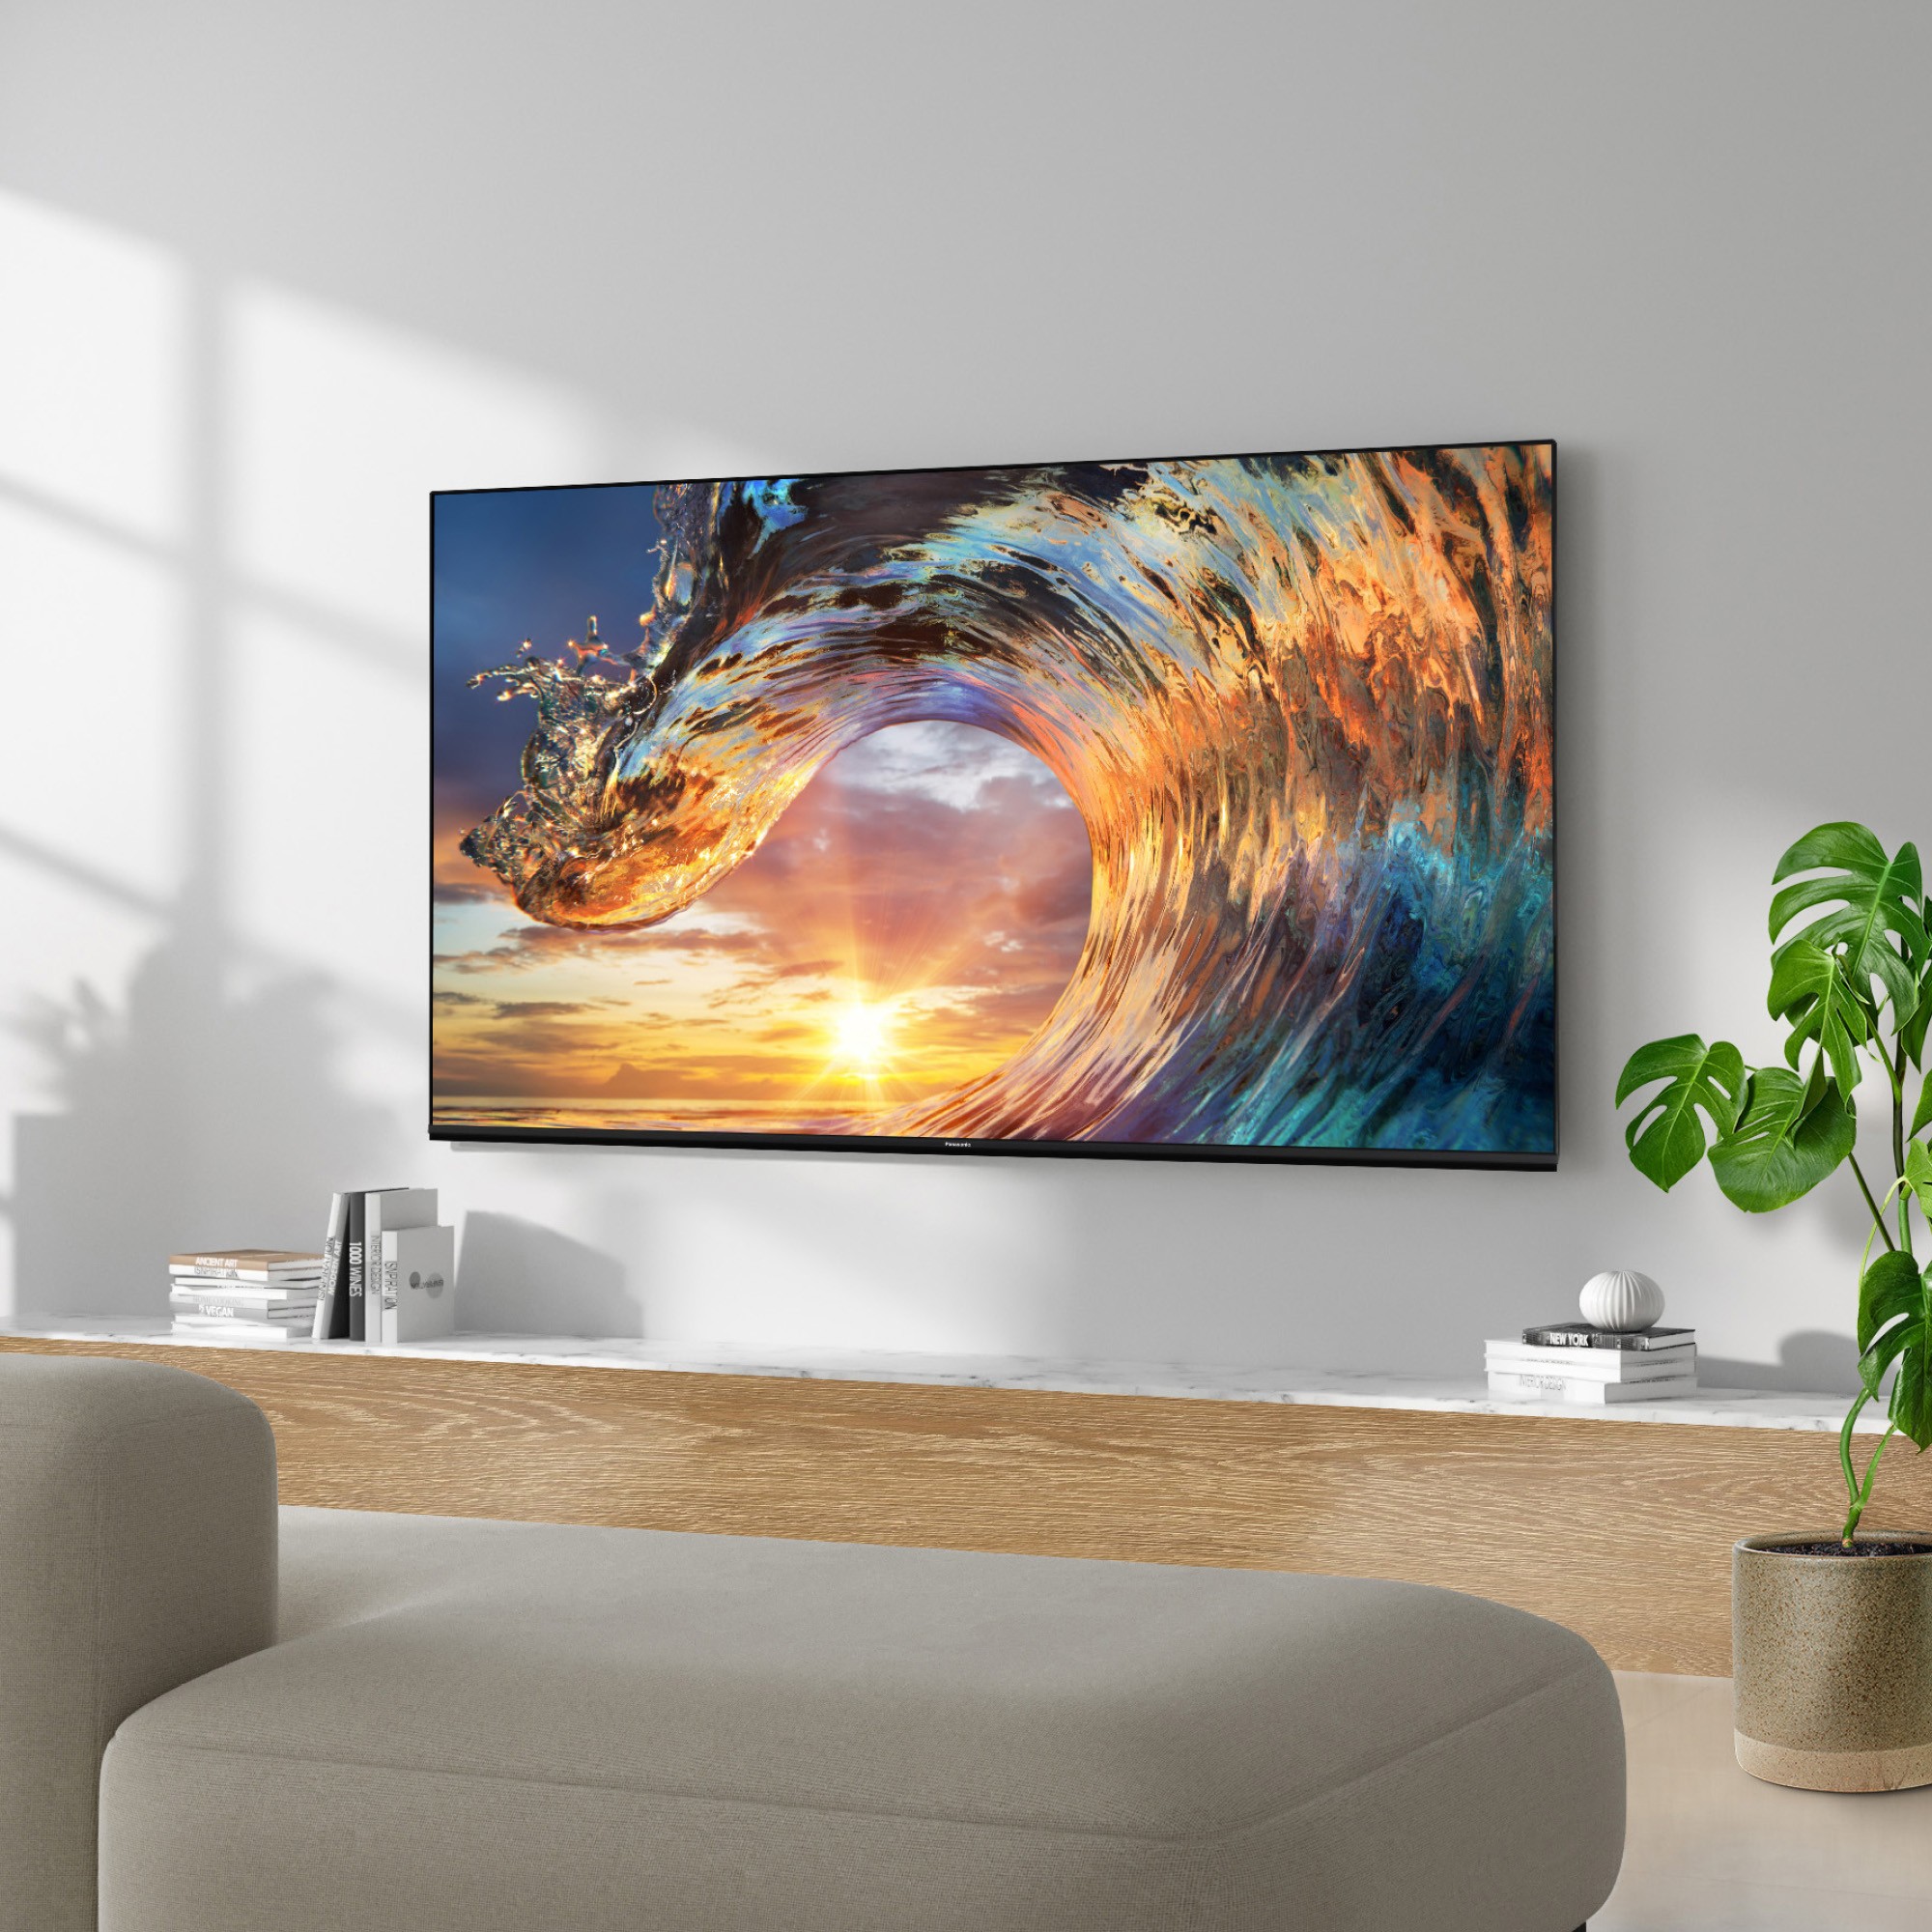 PANASONIC TV OLED 4K 121 cm  - TX-48MZ800E